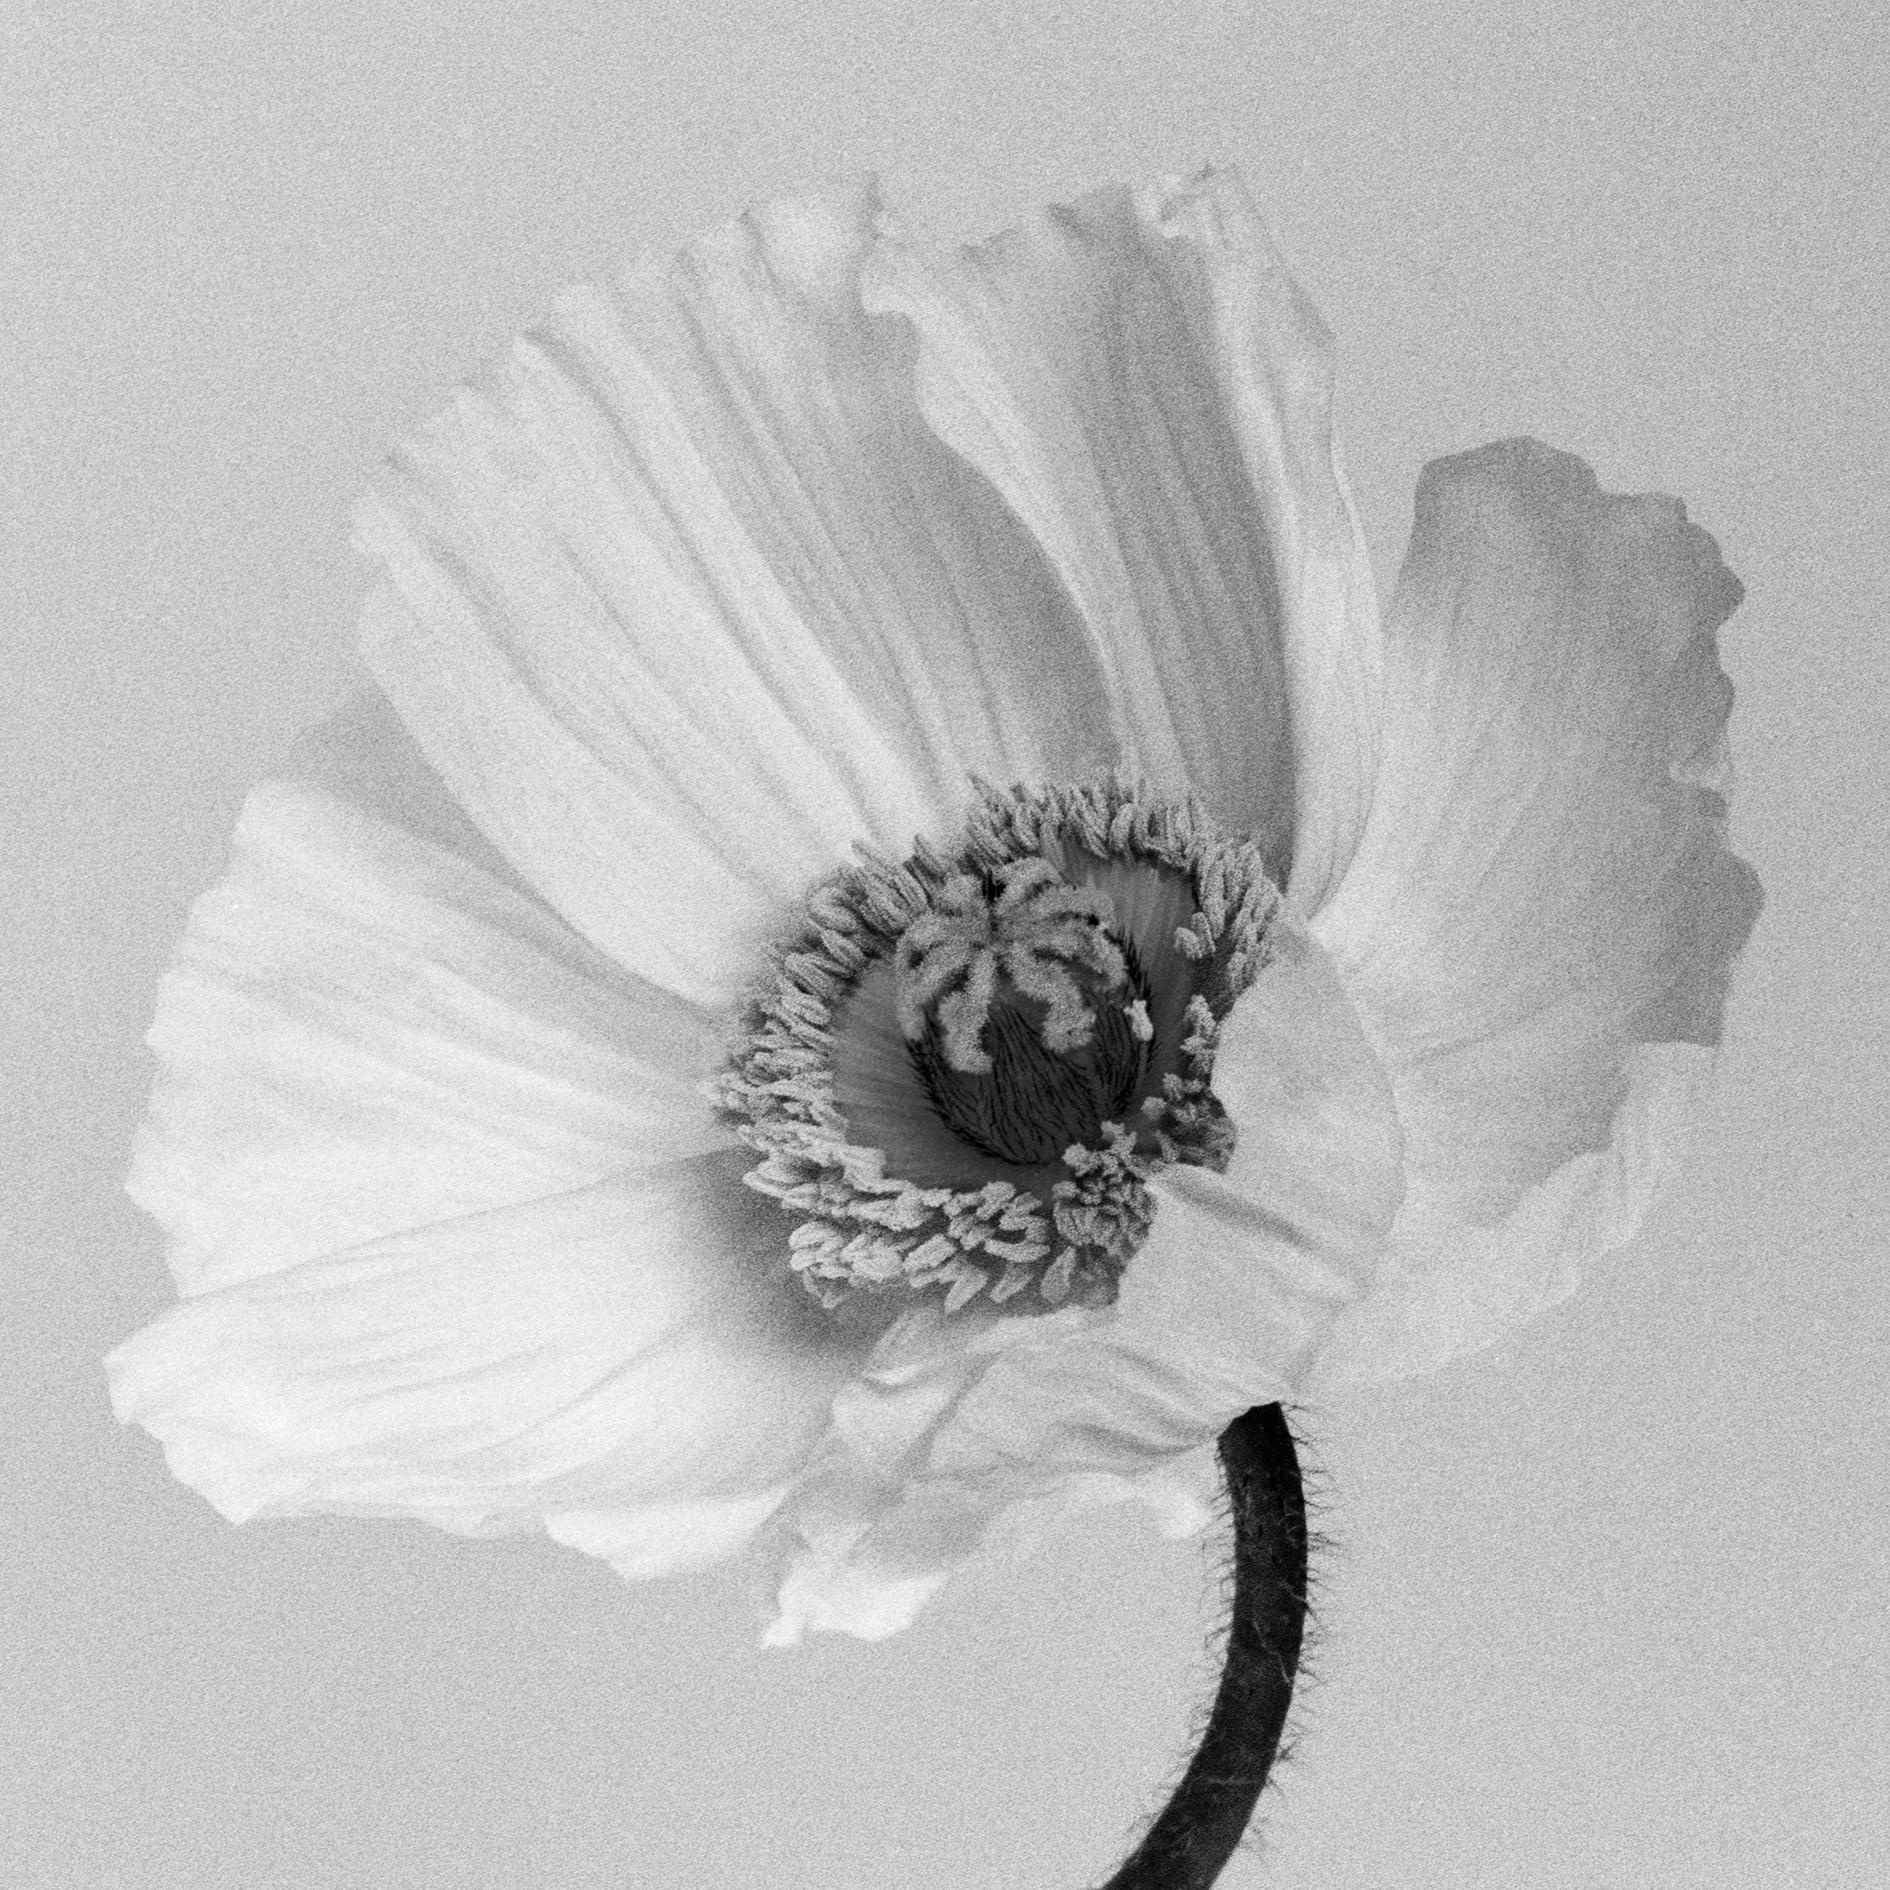 Poppy No.2 – Analogue Schwarz-Weiß-Blumenfotografie in Schwarz-Weiß, Auflage von 10 Stück